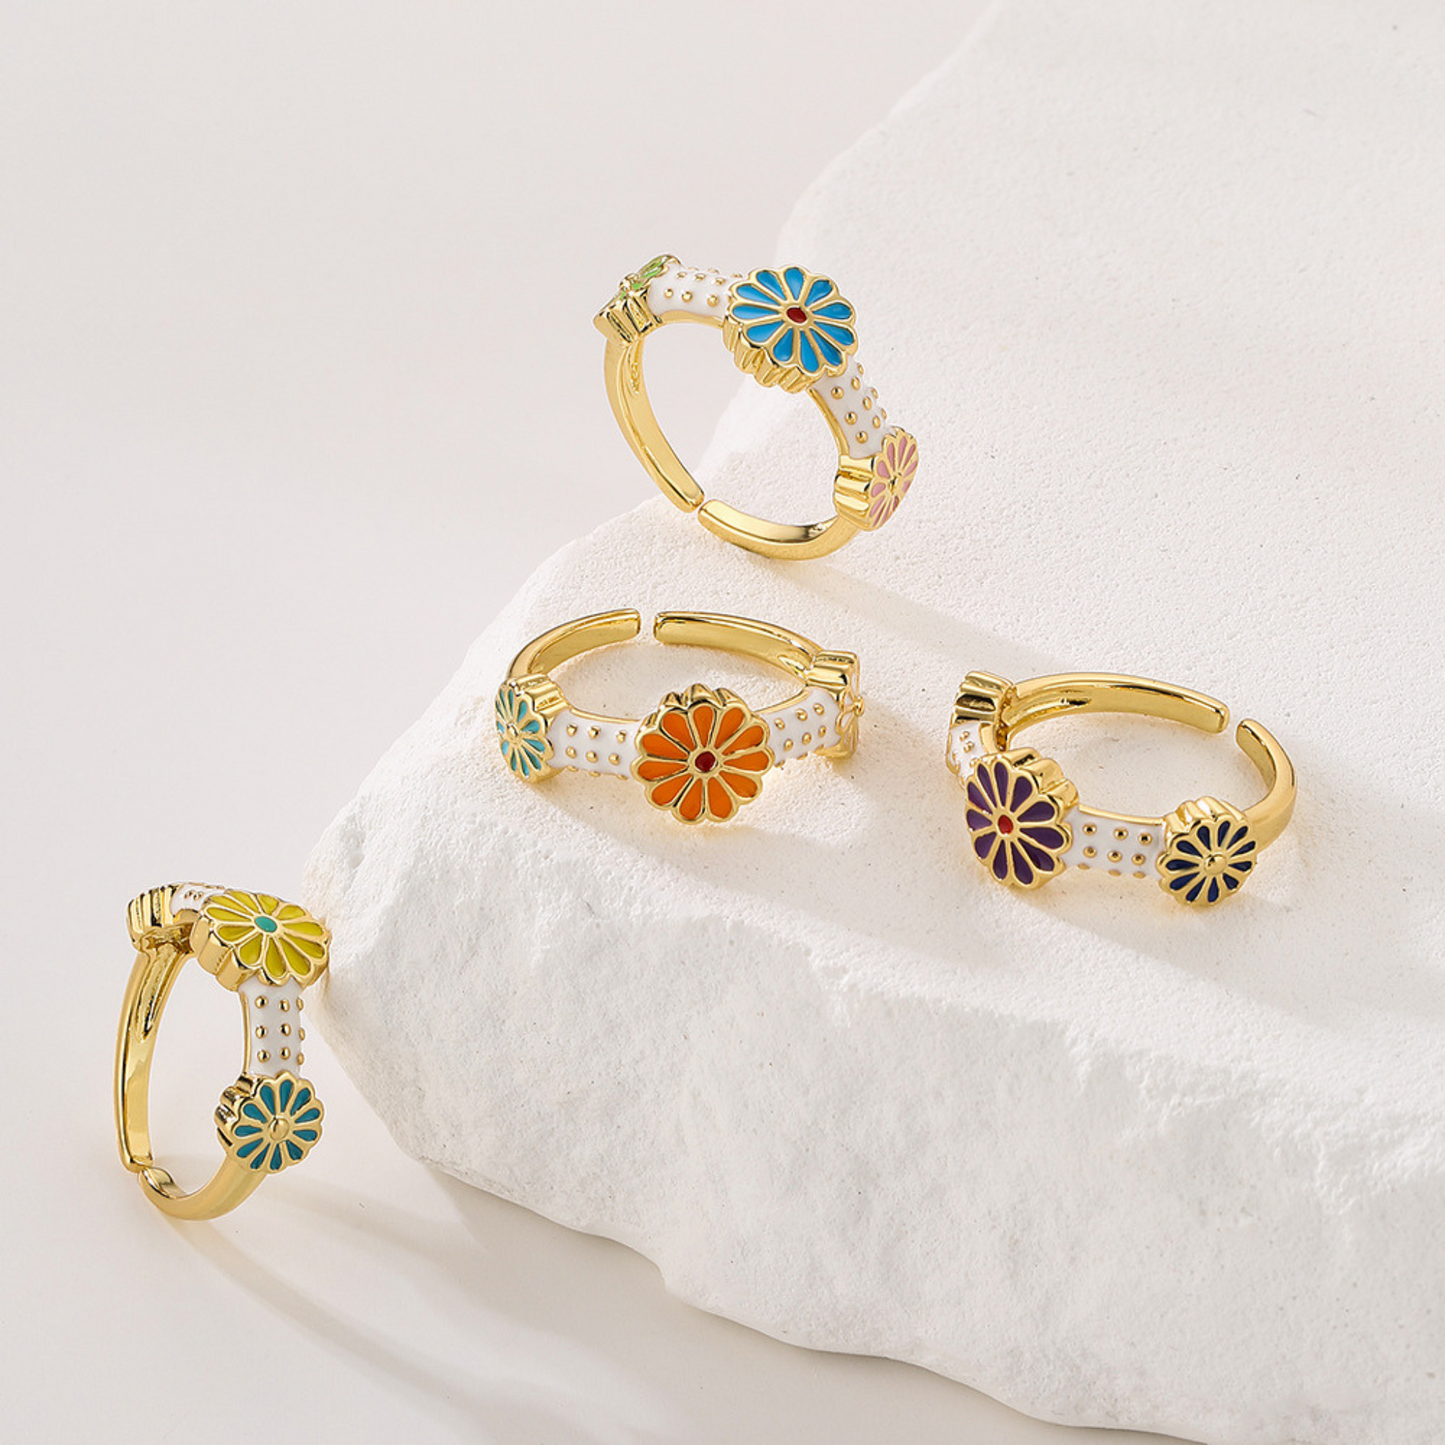 Minimalist Boho Flower Ring for Women